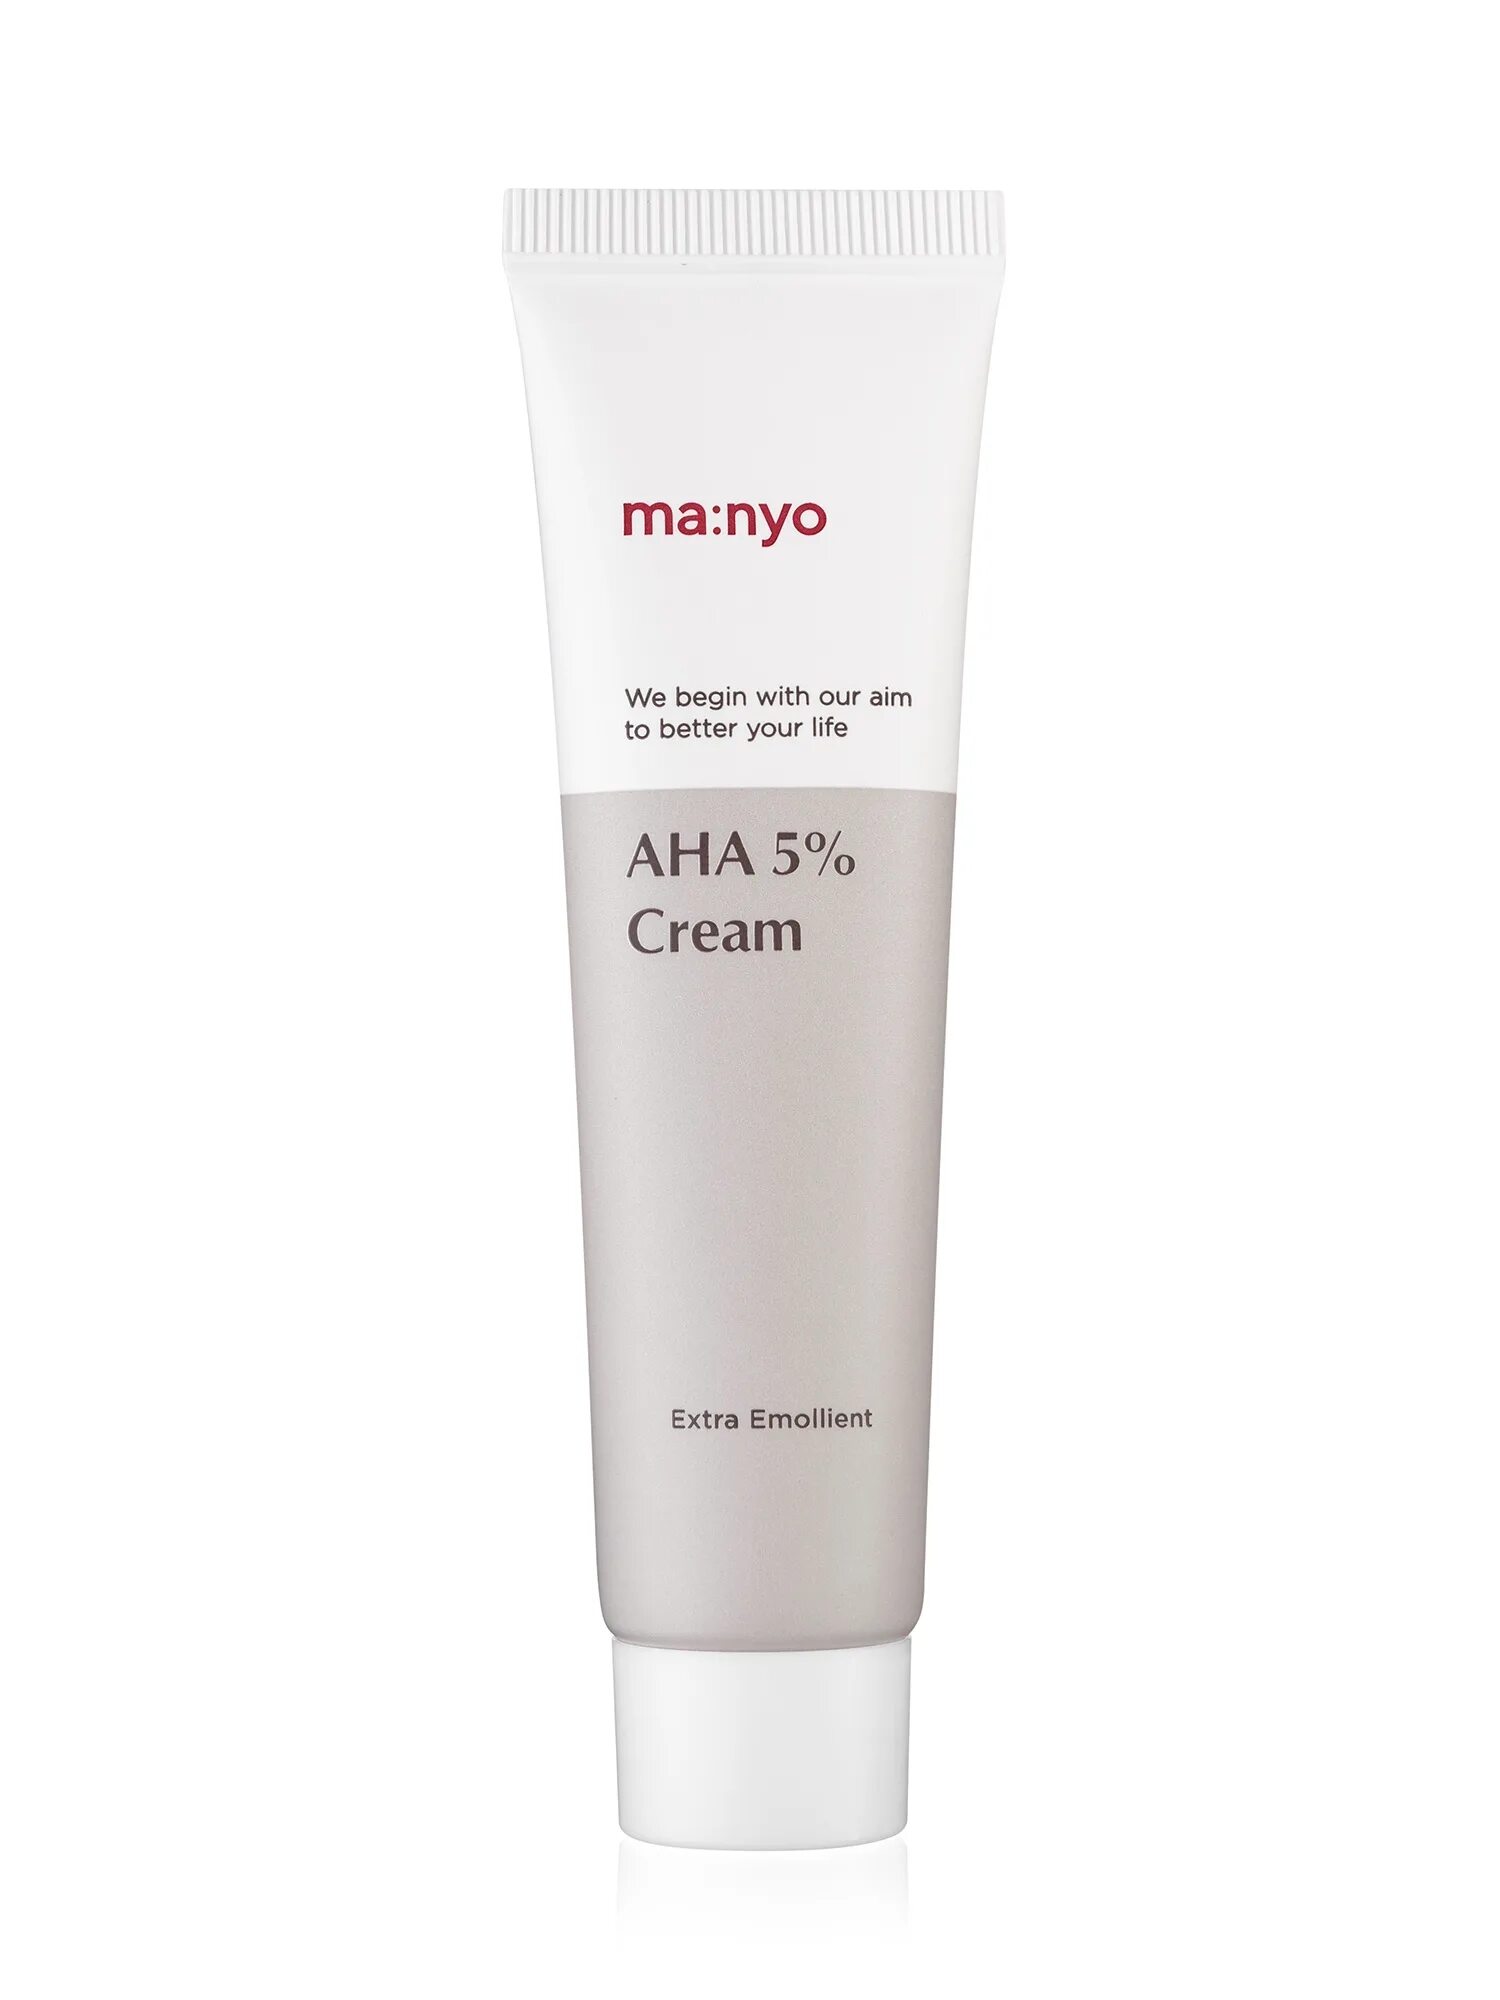 Manyo peeling gel. Ma:nyo Aha 5 Cream. Ma nyo крем. Manyo крем для лица. Manyo Factory крем с ана кислотами Blemish Lab Proxyl 5% Aha Cream.